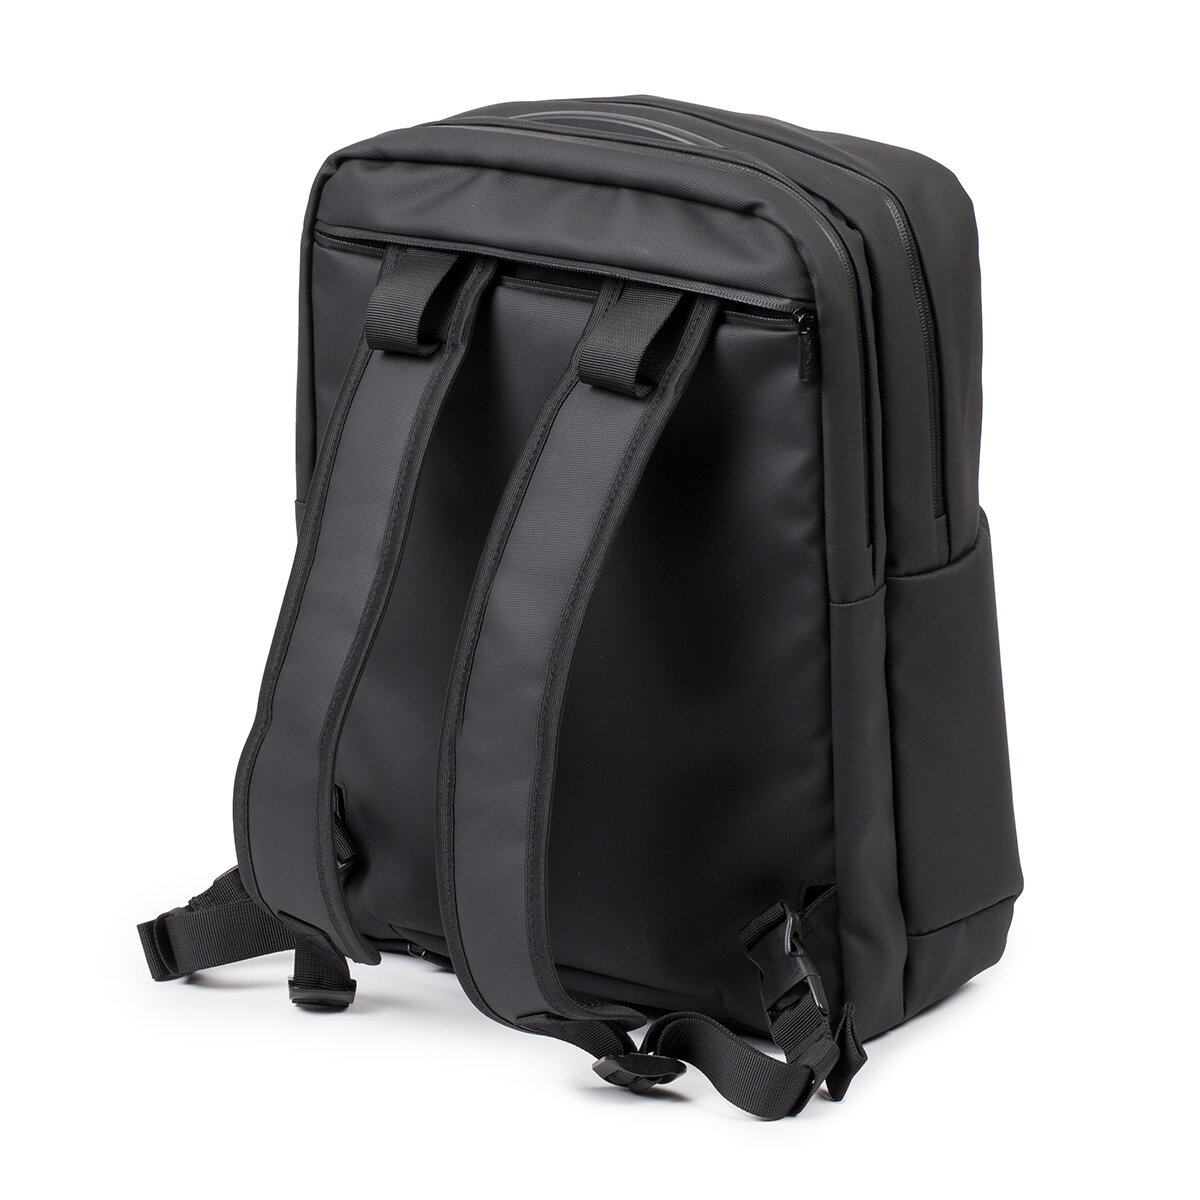 Plecak na laptopa Lexon Challenger 15 czarny widok plecaka od tyłu na białym tle